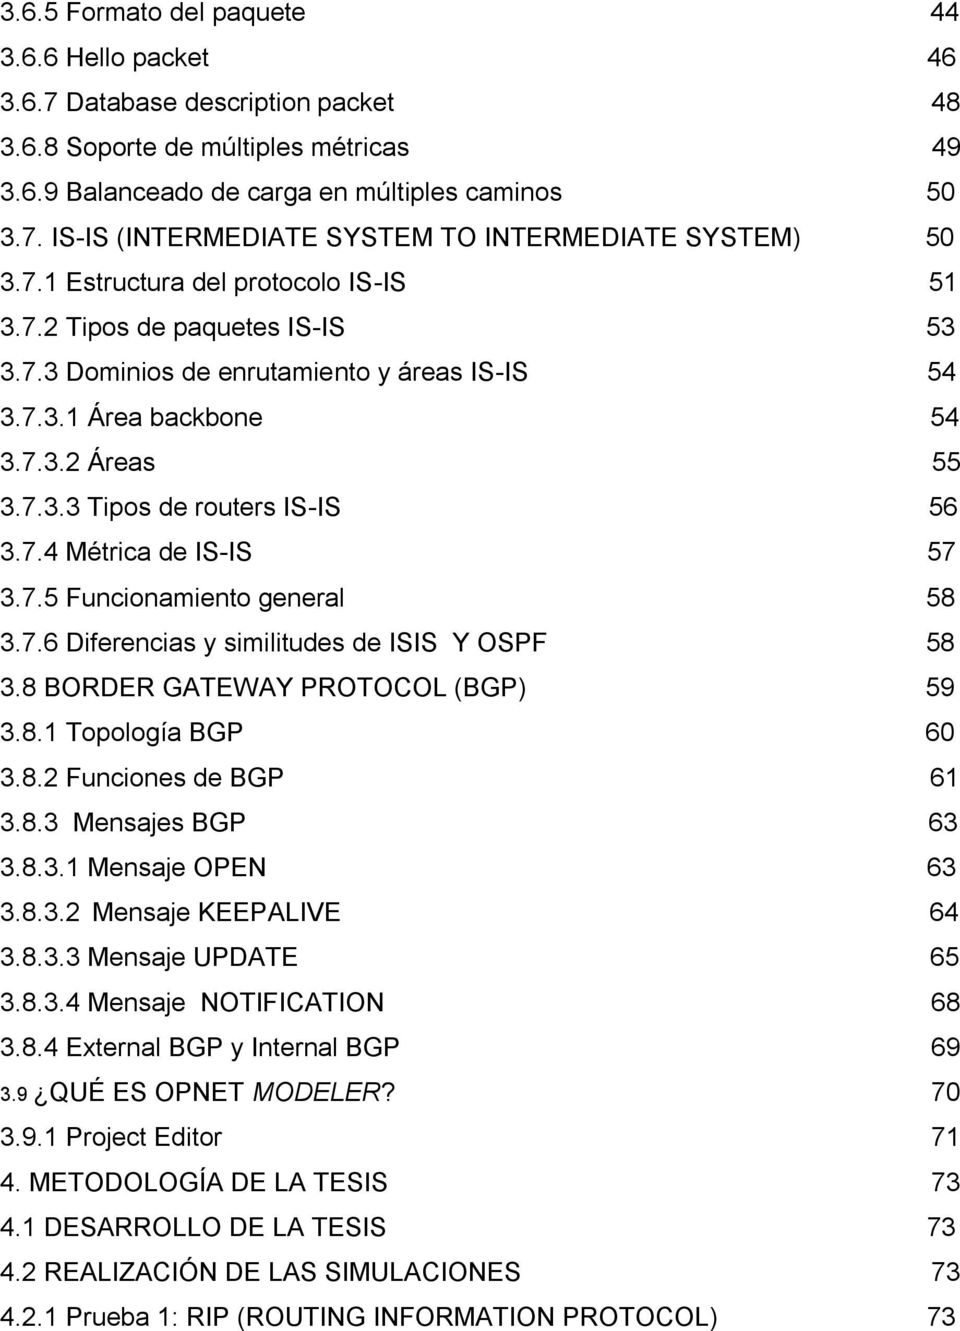 7.5 Funcionamiento general 58 3.7.6 Diferencias y similitudes de ISIS Y OSPF 58 3.8 BORDER GATEWAY PROTOCOL (BGP) 59 3.8.1 Topología BGP 60 3.8.2 Funciones de BGP 61 3.8.3 Mensajes BGP 63 3.8.3.1 Mensaje OPEN 63 3.